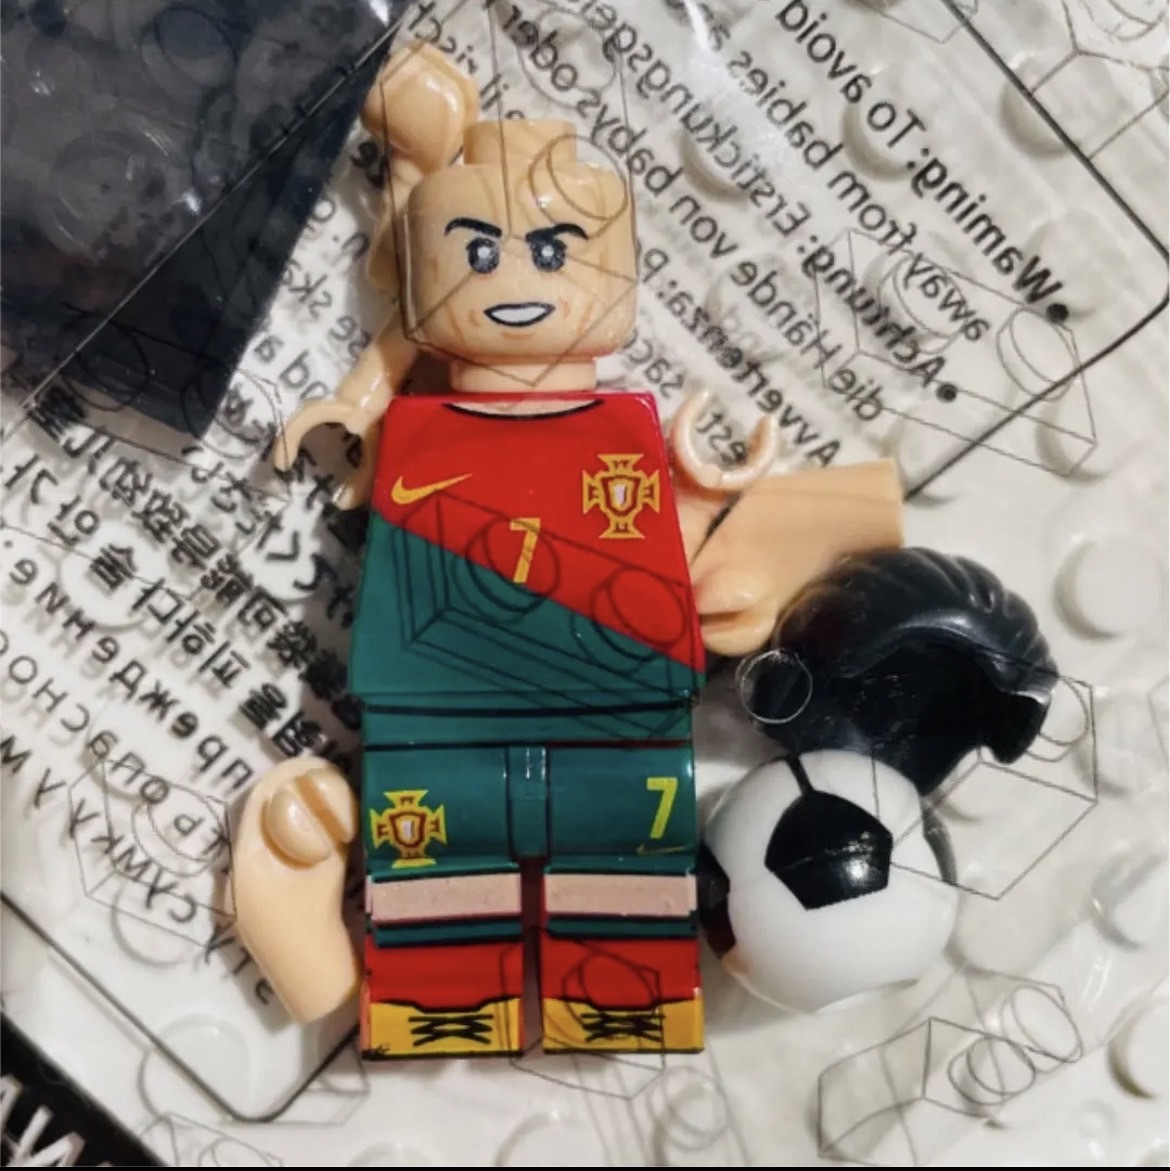 8 body комплект A LEGO Lego сменный Mini figW кубок cup футбол Star игрок ronaudo популярный команда спортсмен фигурка миниатюра бесплатная доставка анонимность рассылка 